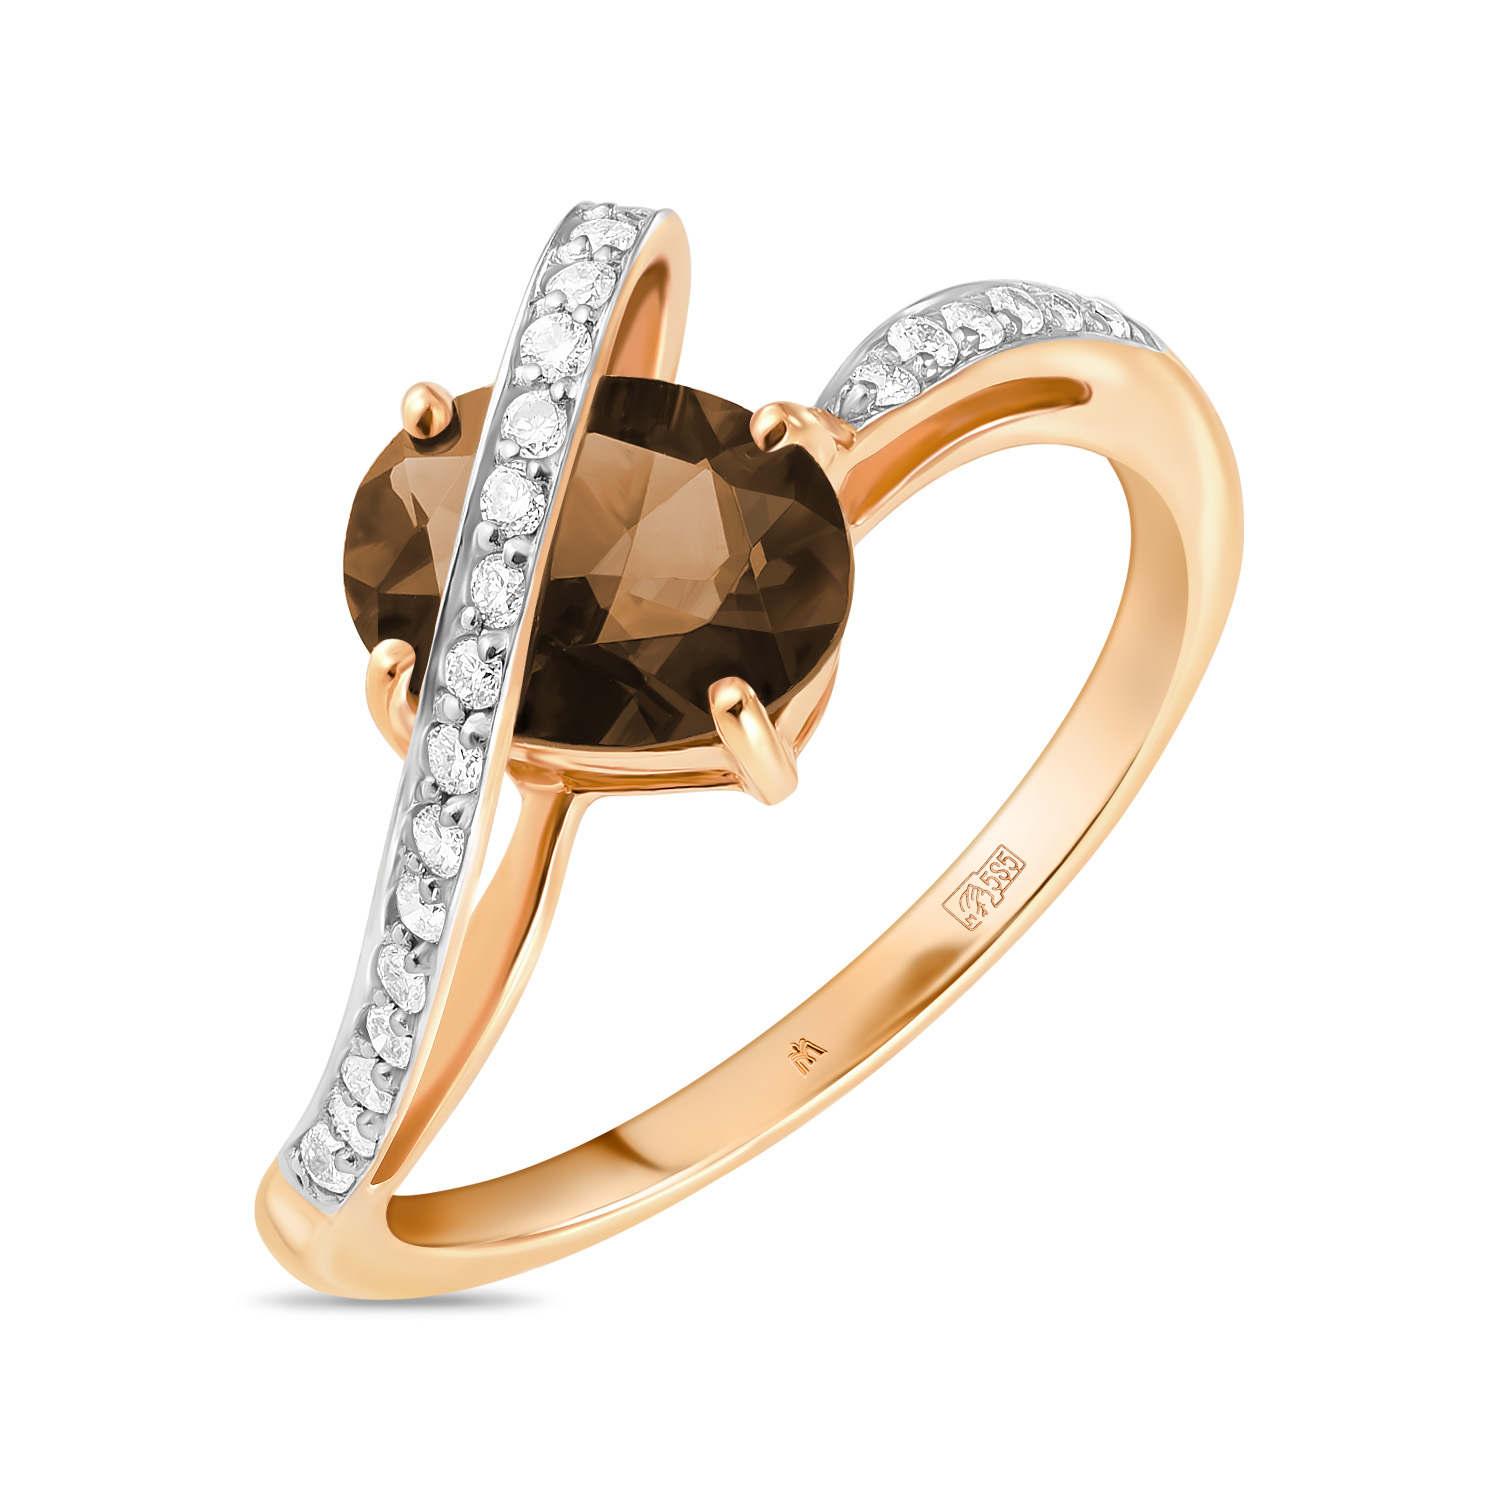 Кольца МЮЗ Золотое кольцо с бриллиантами и кварцем